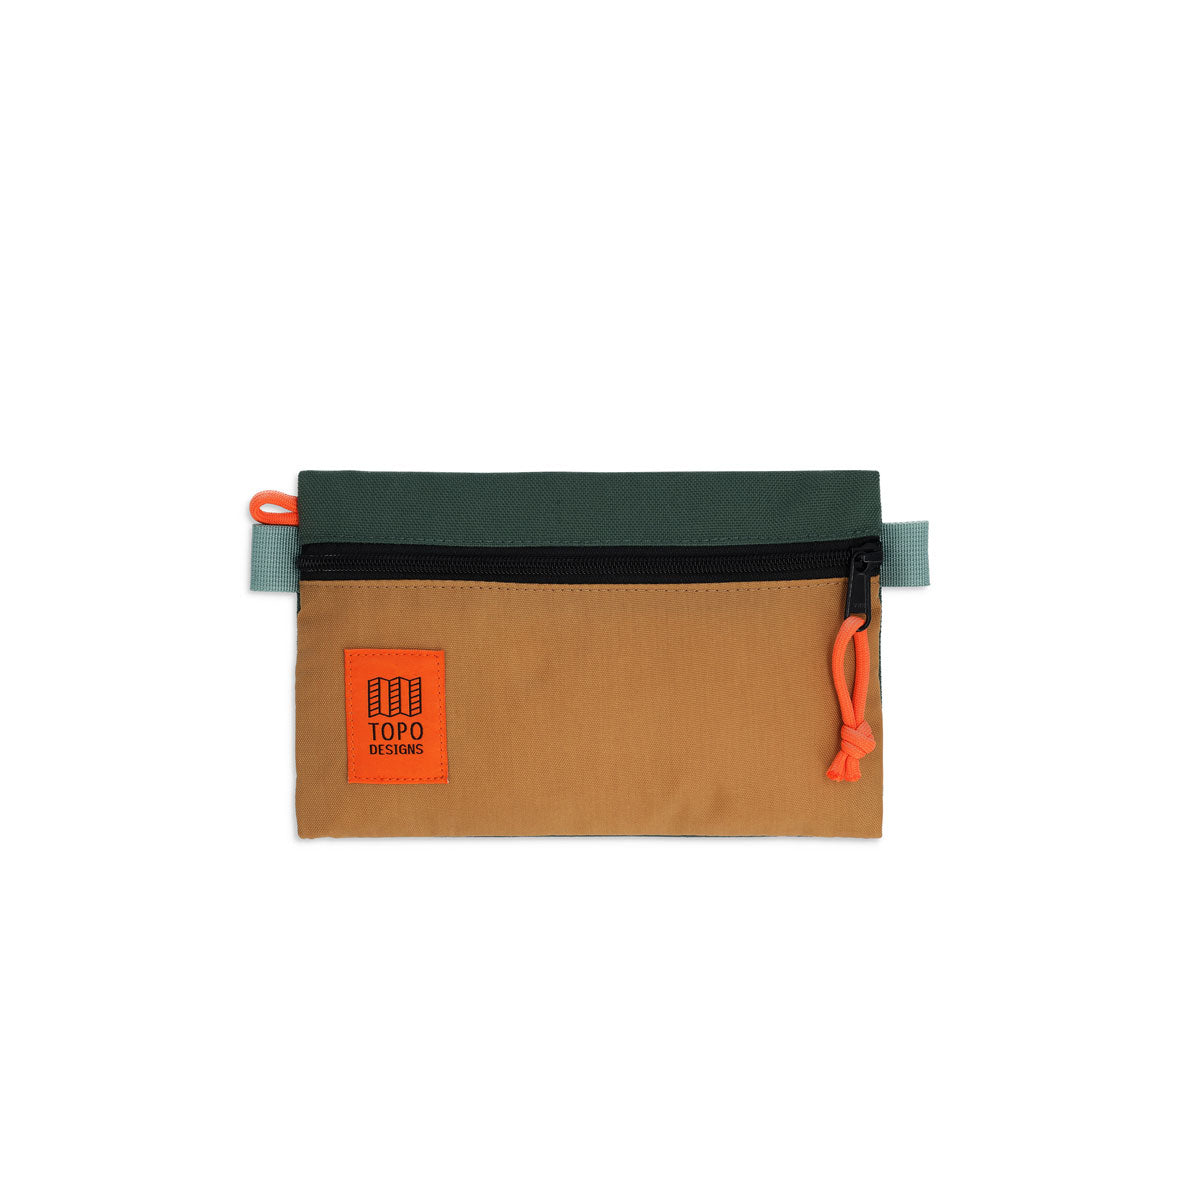 Topo Designs : Accessory Bag : Khaki/Forest